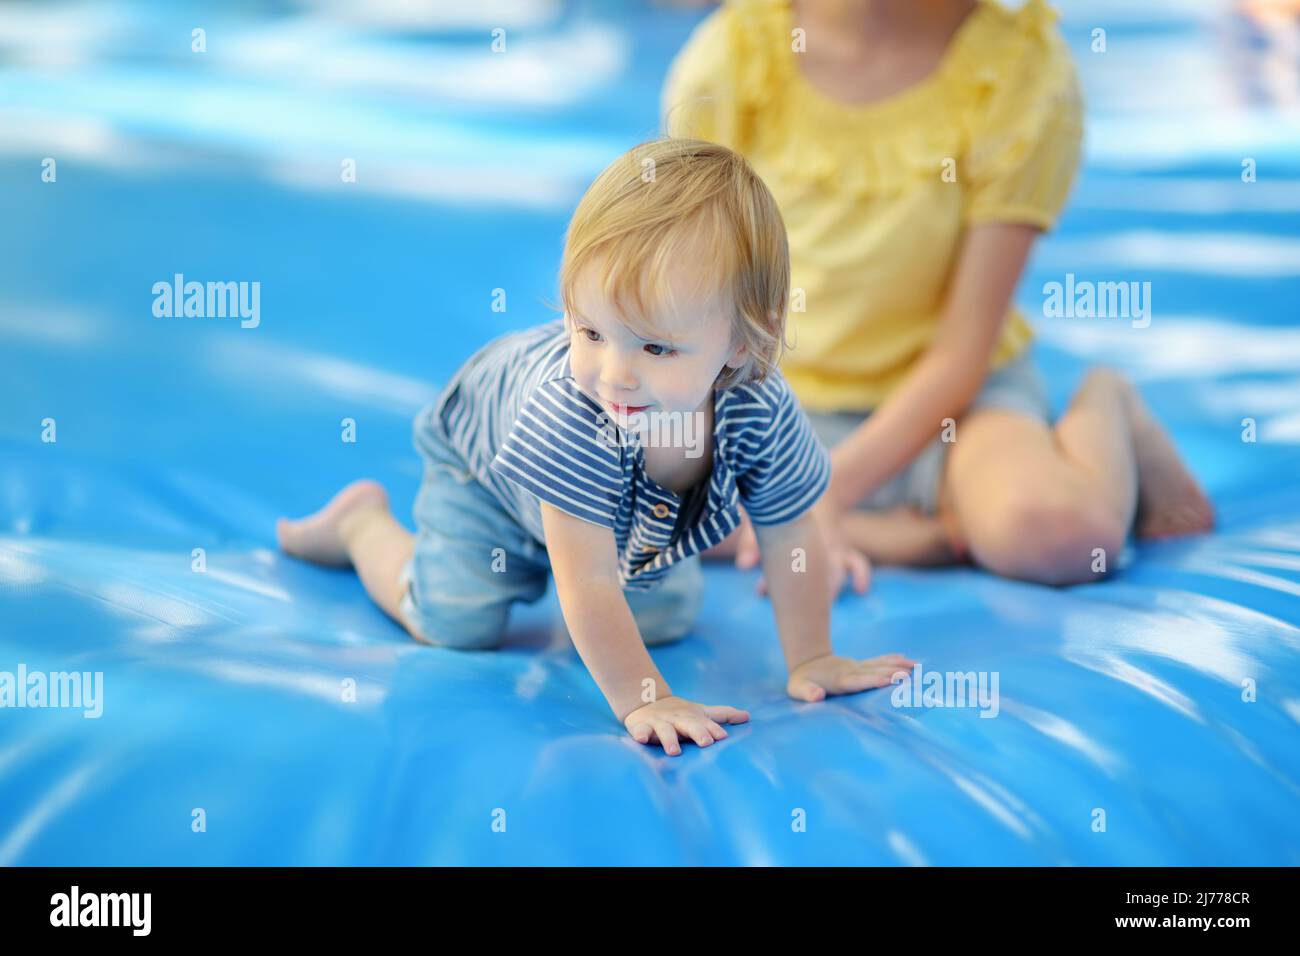 Niedlicher kleiner Kleinkind Junge hüpft auf riesigen Wasser gefüllt springen Kissen. Boy springt auf und ab auf Hüpfkissen. Aktive Familienfreizeitgestaltung für Kinder und Eltern Stockfoto